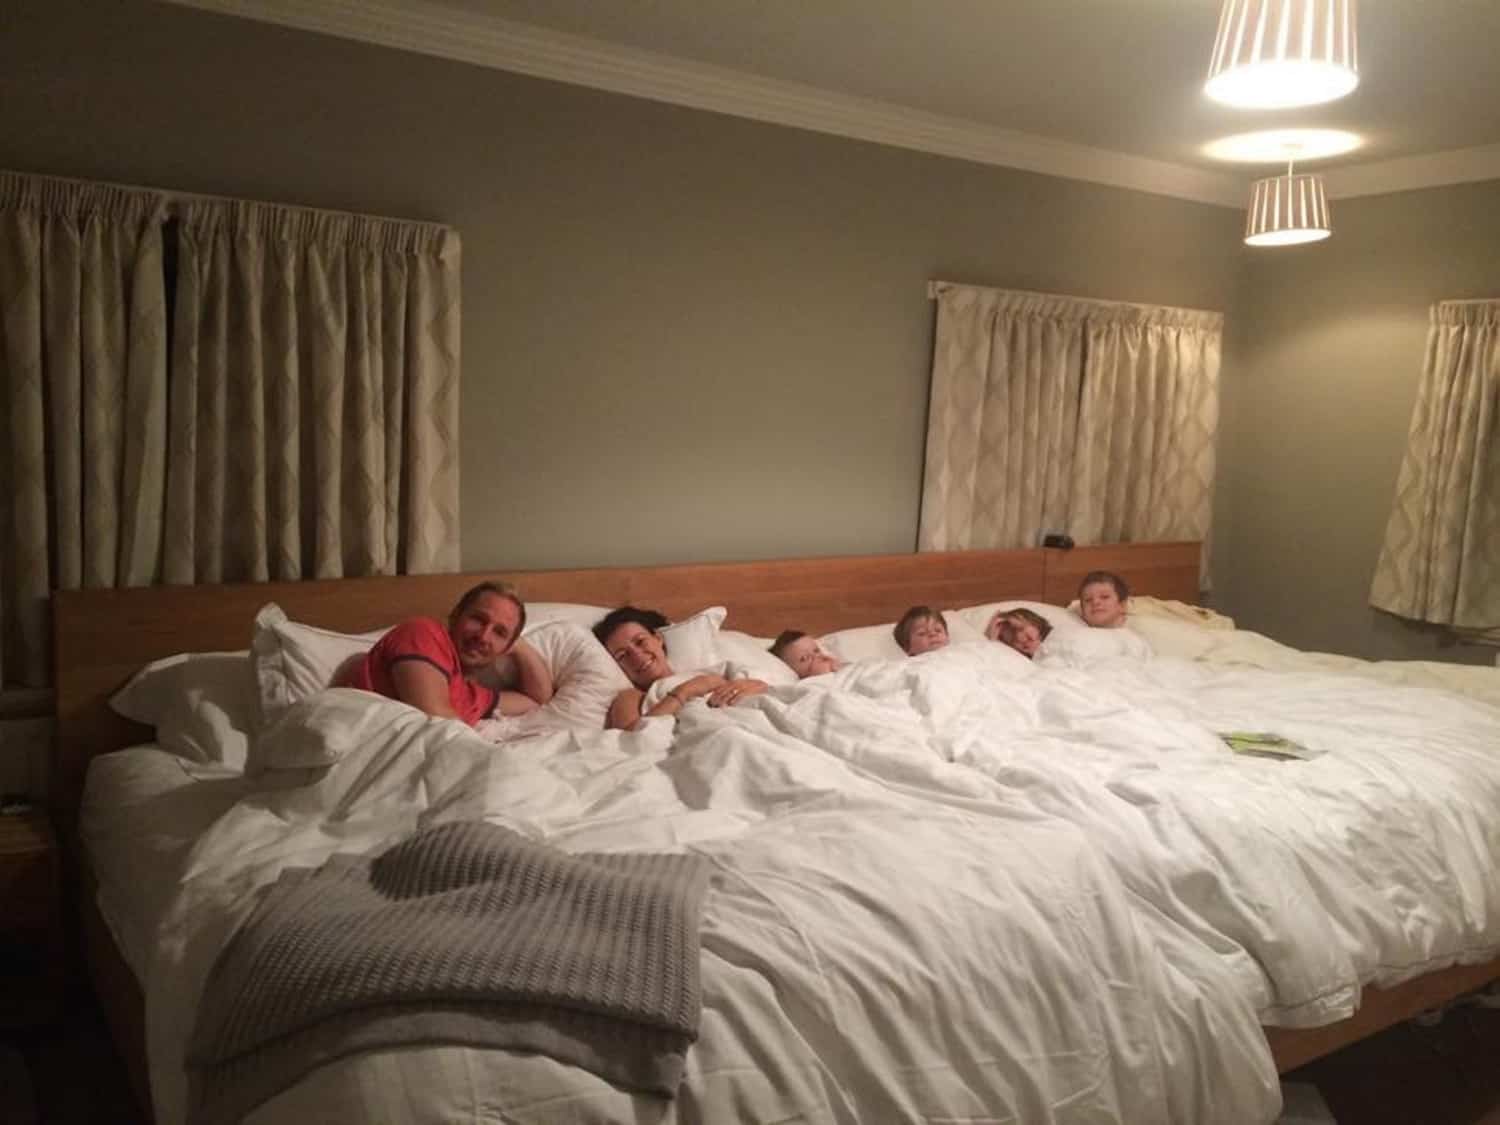 Родители спали подростков. Спальня с раздельными кроватями. Супружеская кровать. Семья в одной кровати. Огромная кровать.